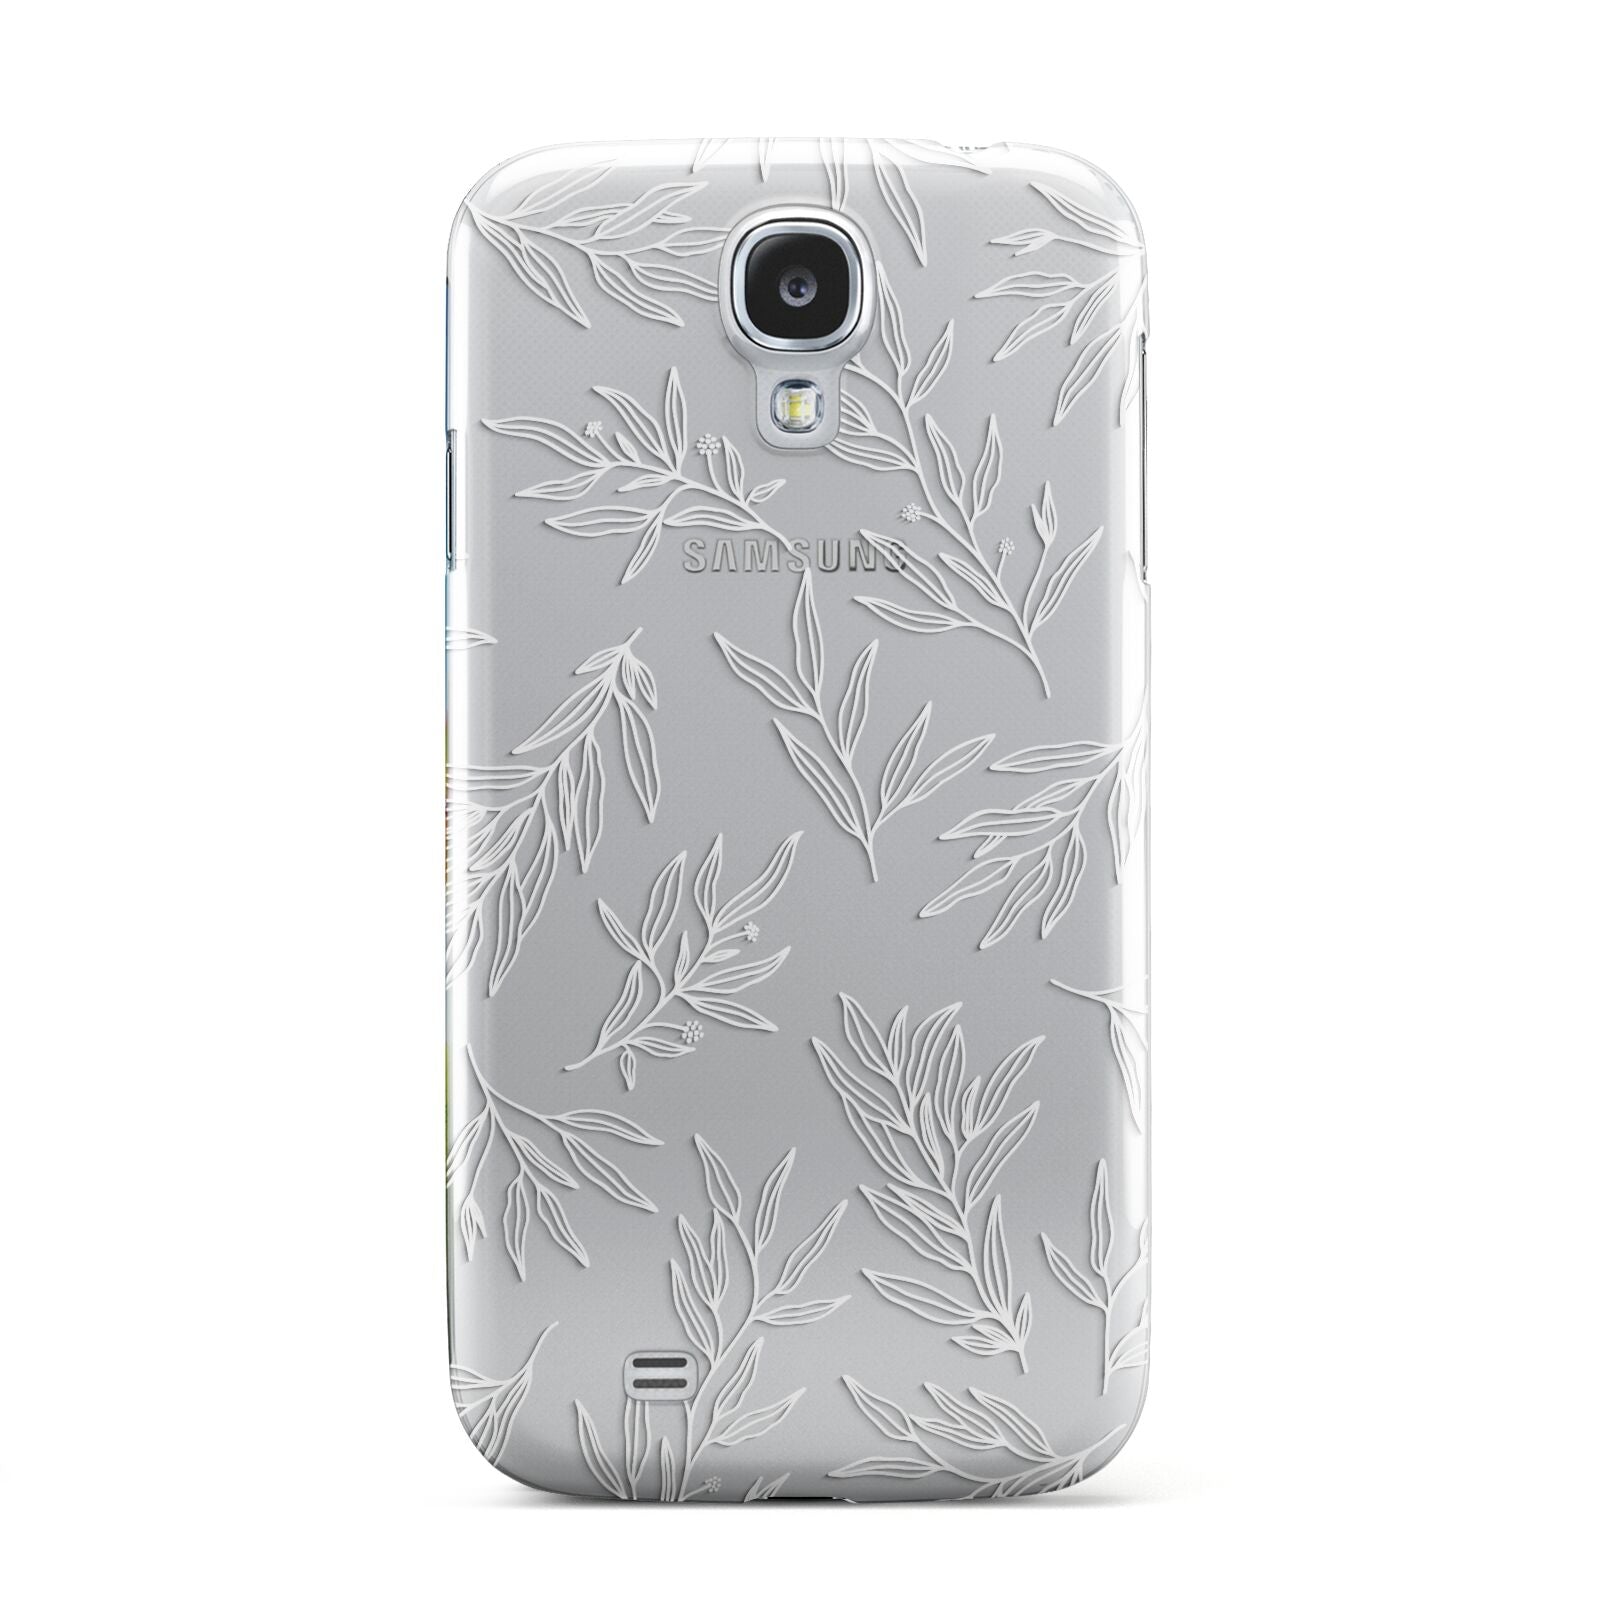 Botanical Leaf Samsung Galaxy S4 Case